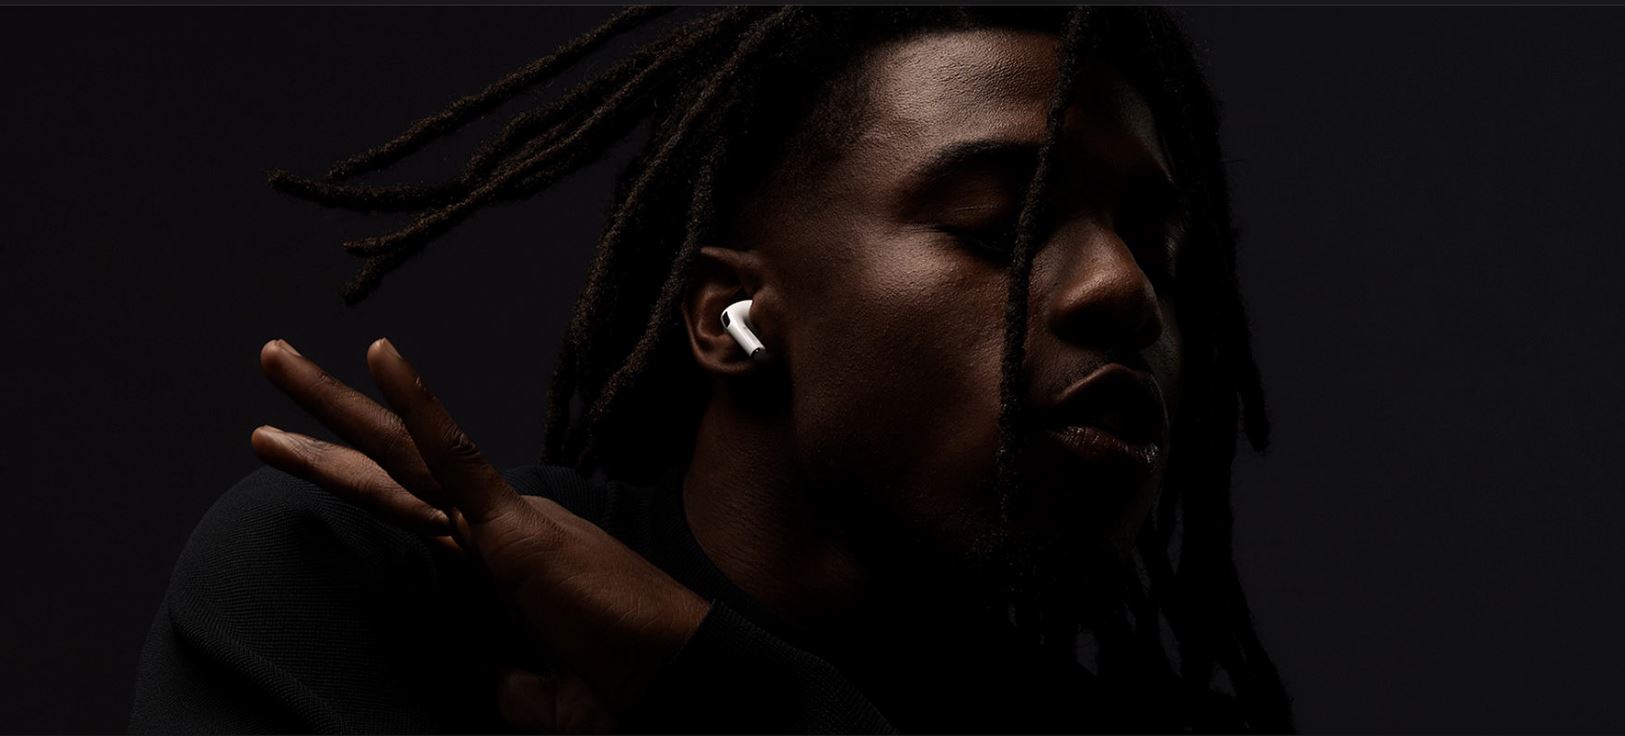 אוזניות אפל מקוריות Apple AirPods pro עם טעינה אלחוטית אחריות רשמית עולם קסום